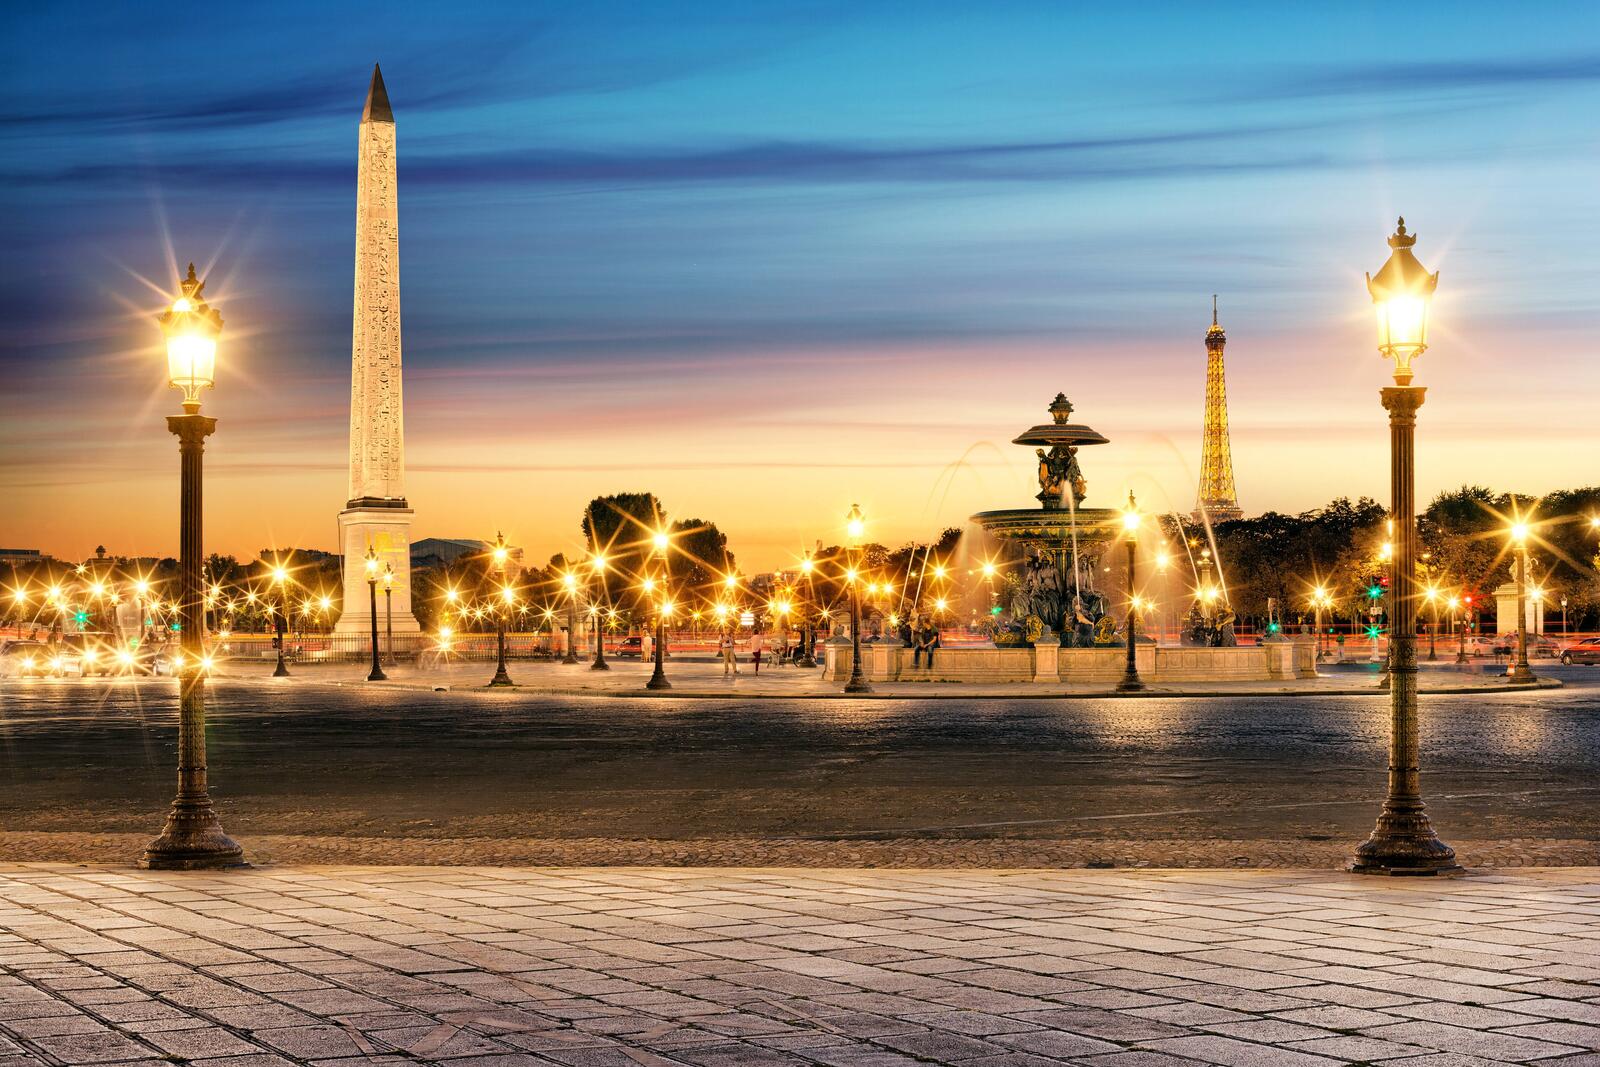 Обои Эйфелева Башня Париж фонари на рабочий стол